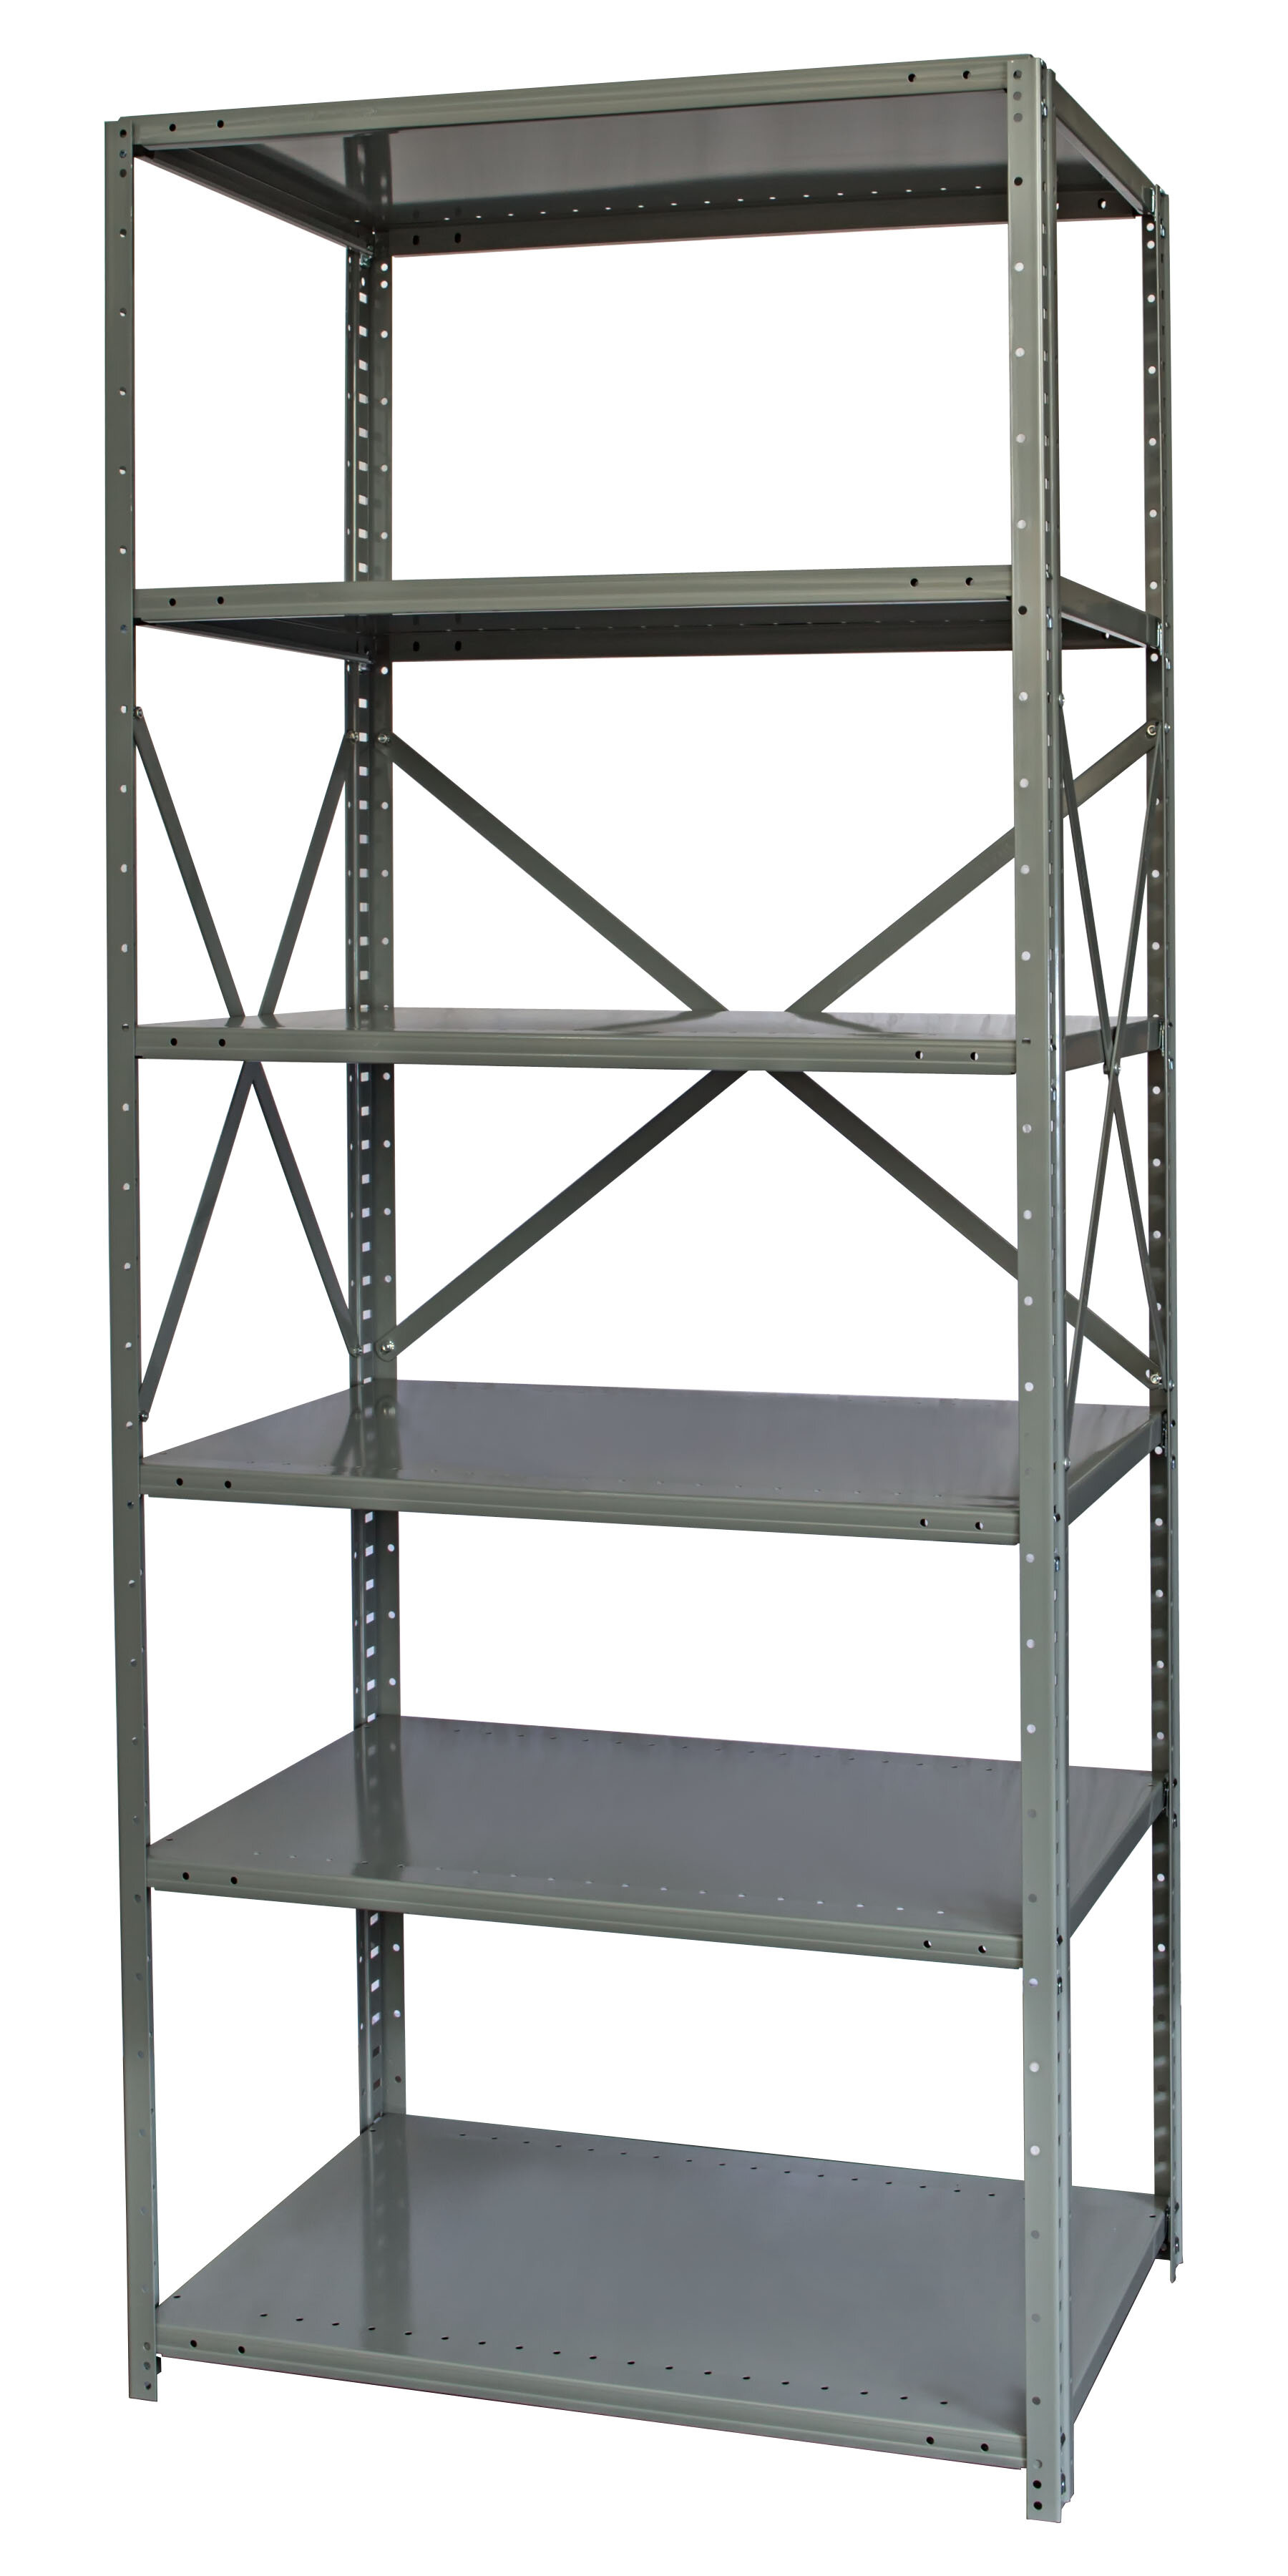 Hallowell Hi-Tech Free Standing 6 Shelves Shelving Unit | Wayfair